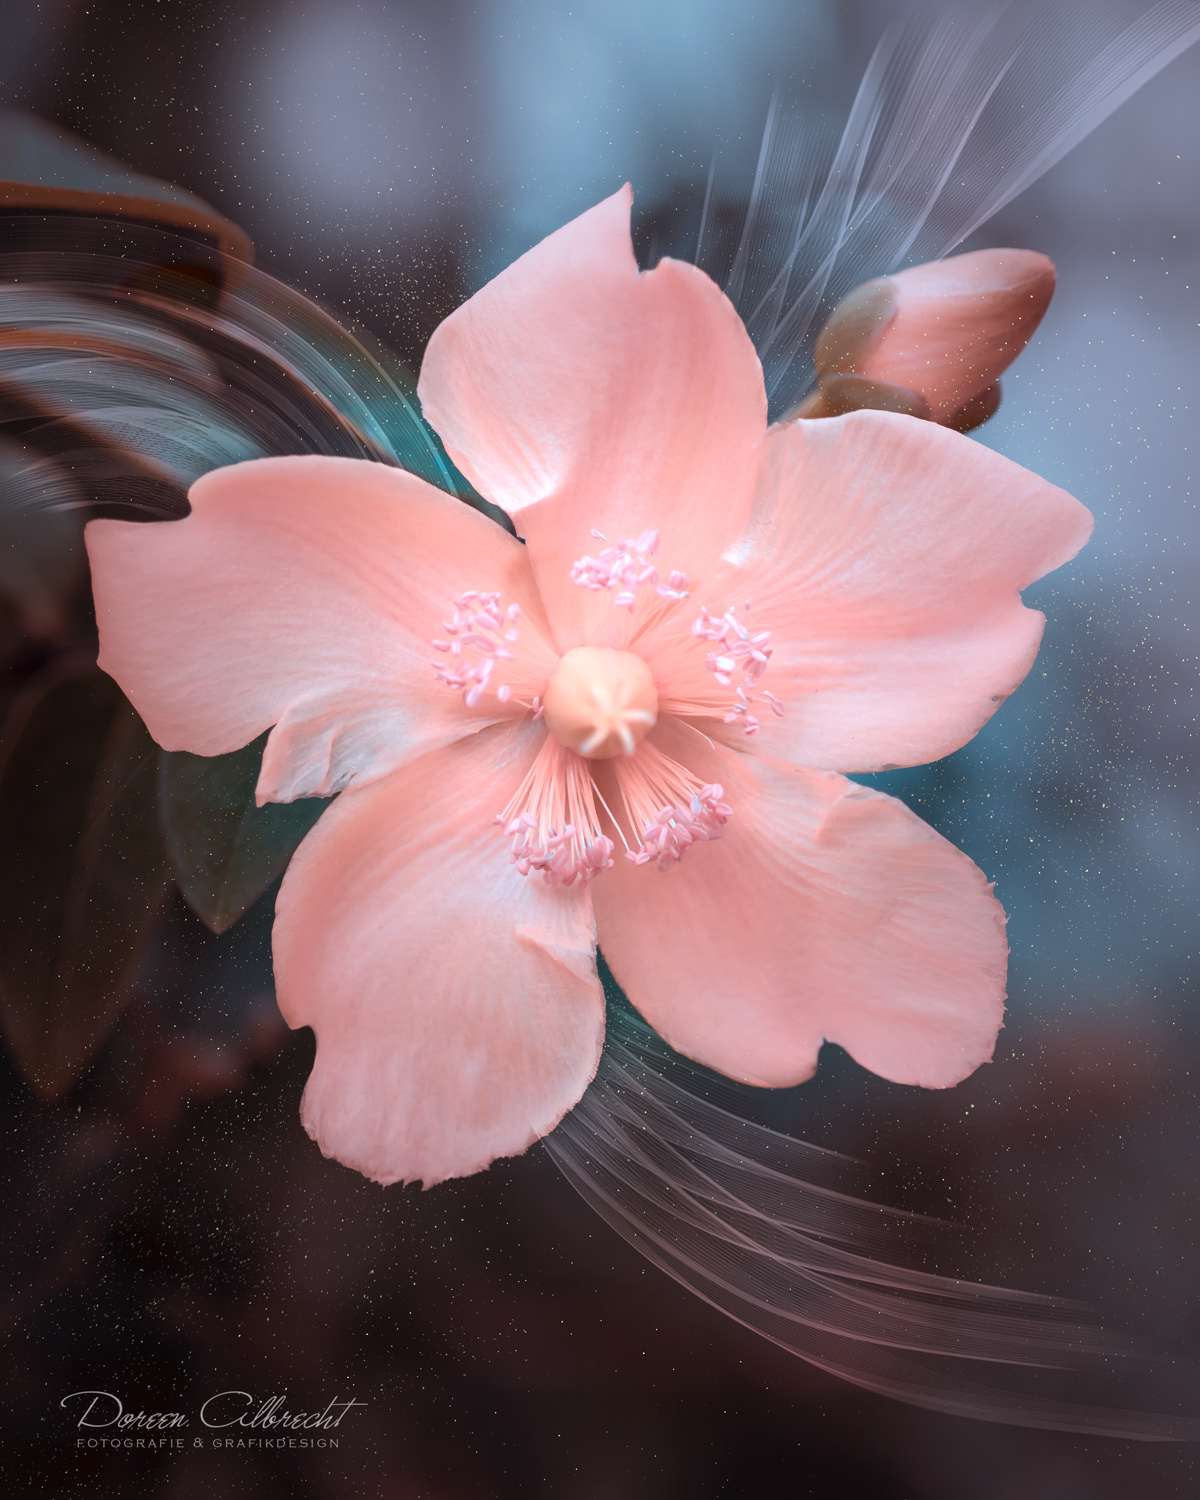 Волшебные снимки цветов от Дорин Альбрехт